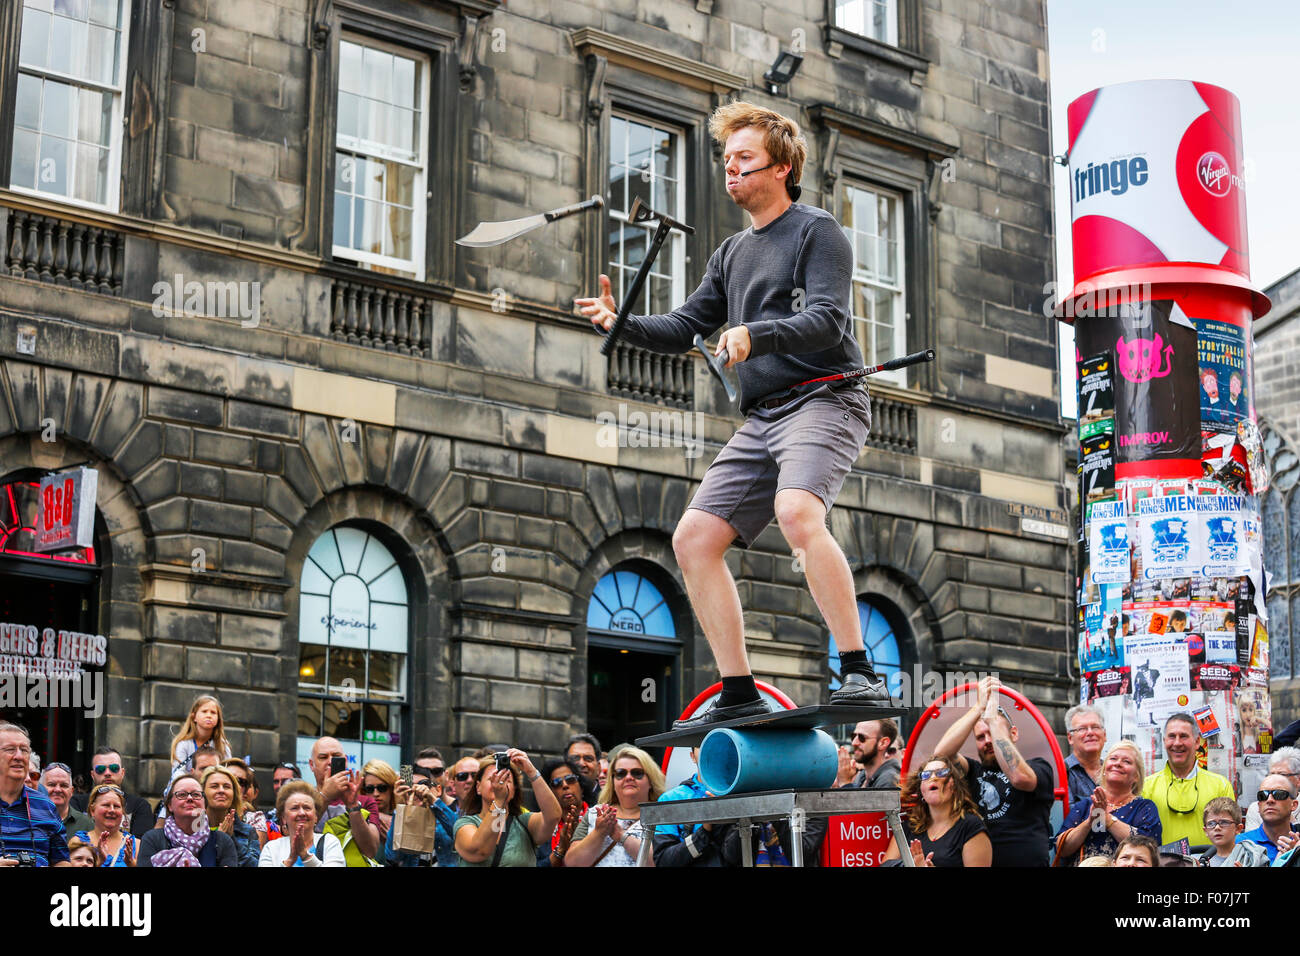 Daniel Zindler du Canada effectuant une jonglerie et équilibre dans le Royal Mile, au cours de l'Edinburgh Fringe Fest Banque D'Images